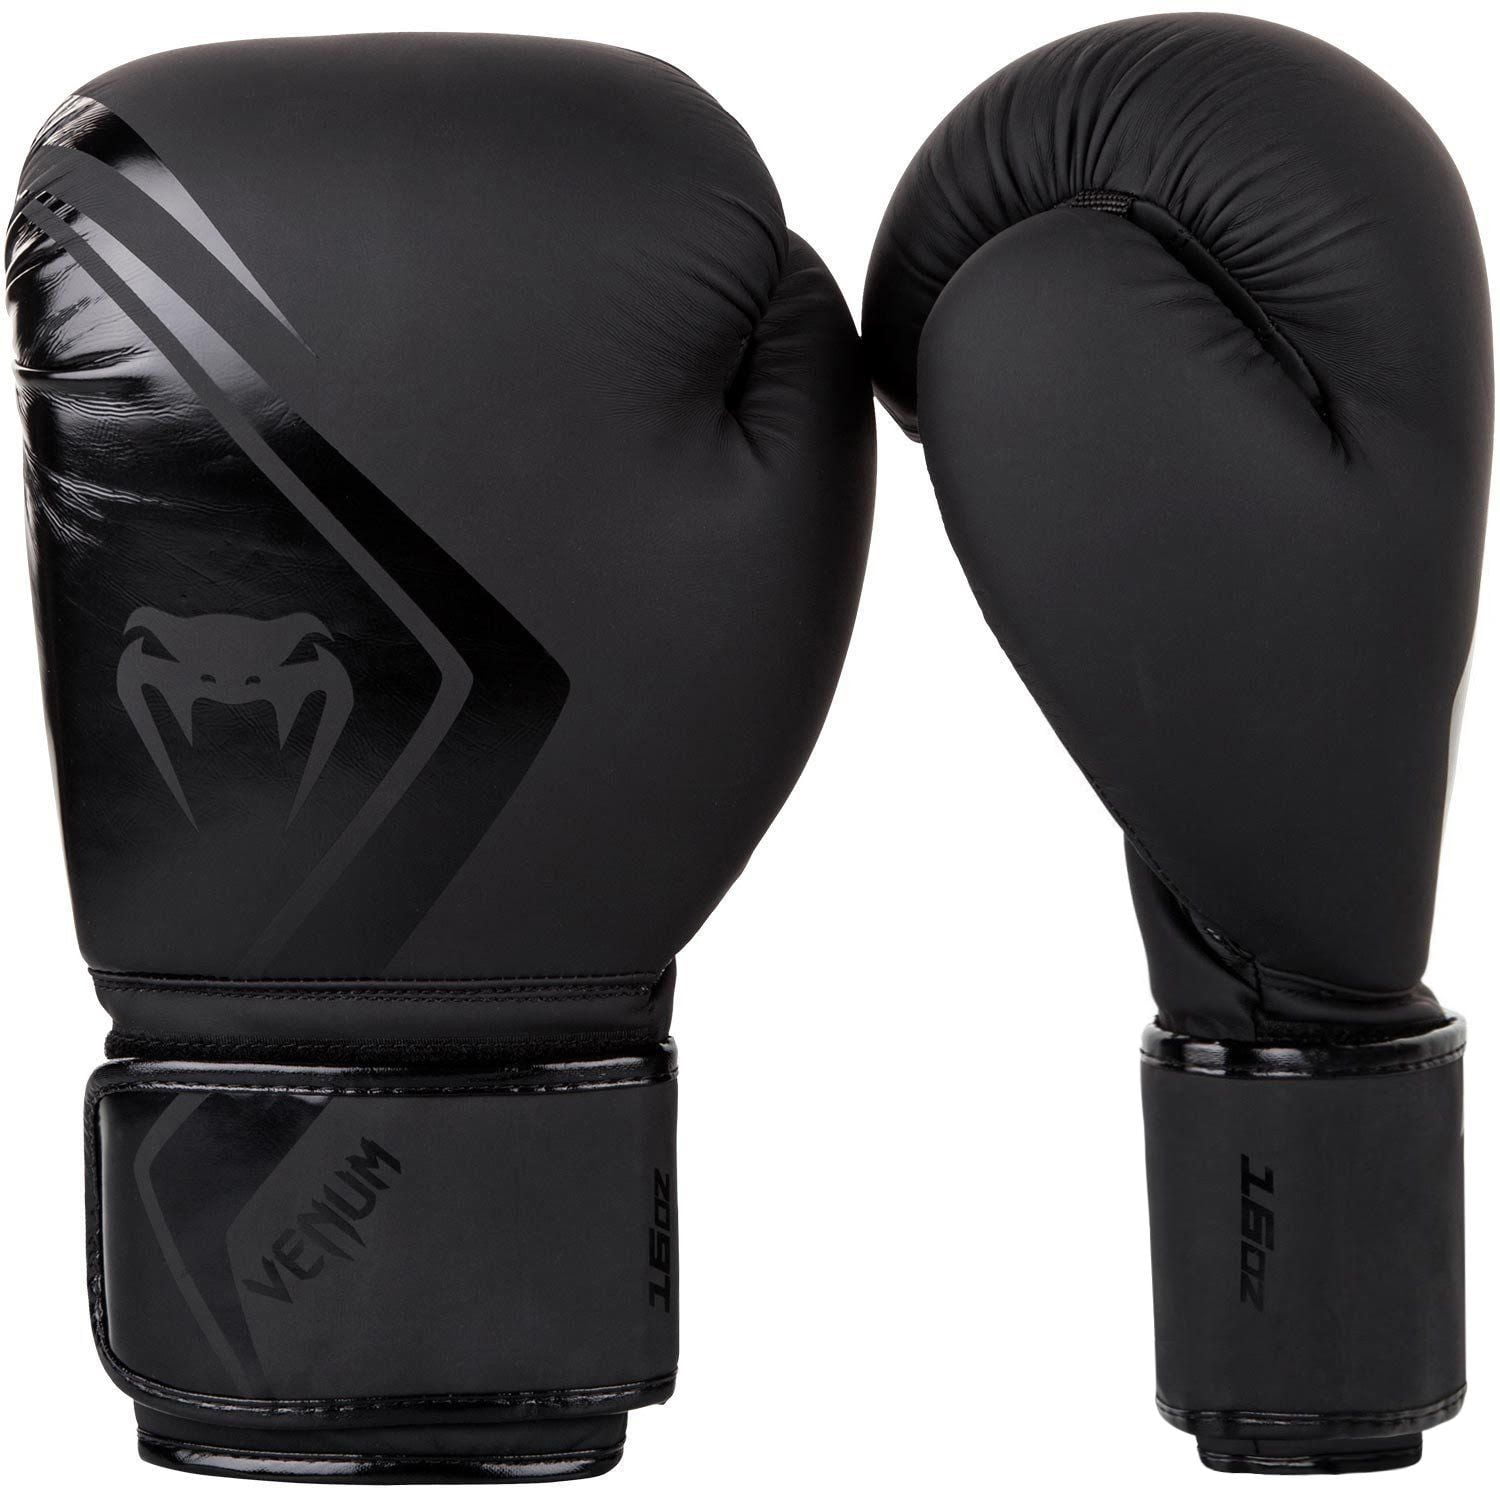 Gants de boxe Venum Contender 2.0 - Noir - 16 oz - Maroc